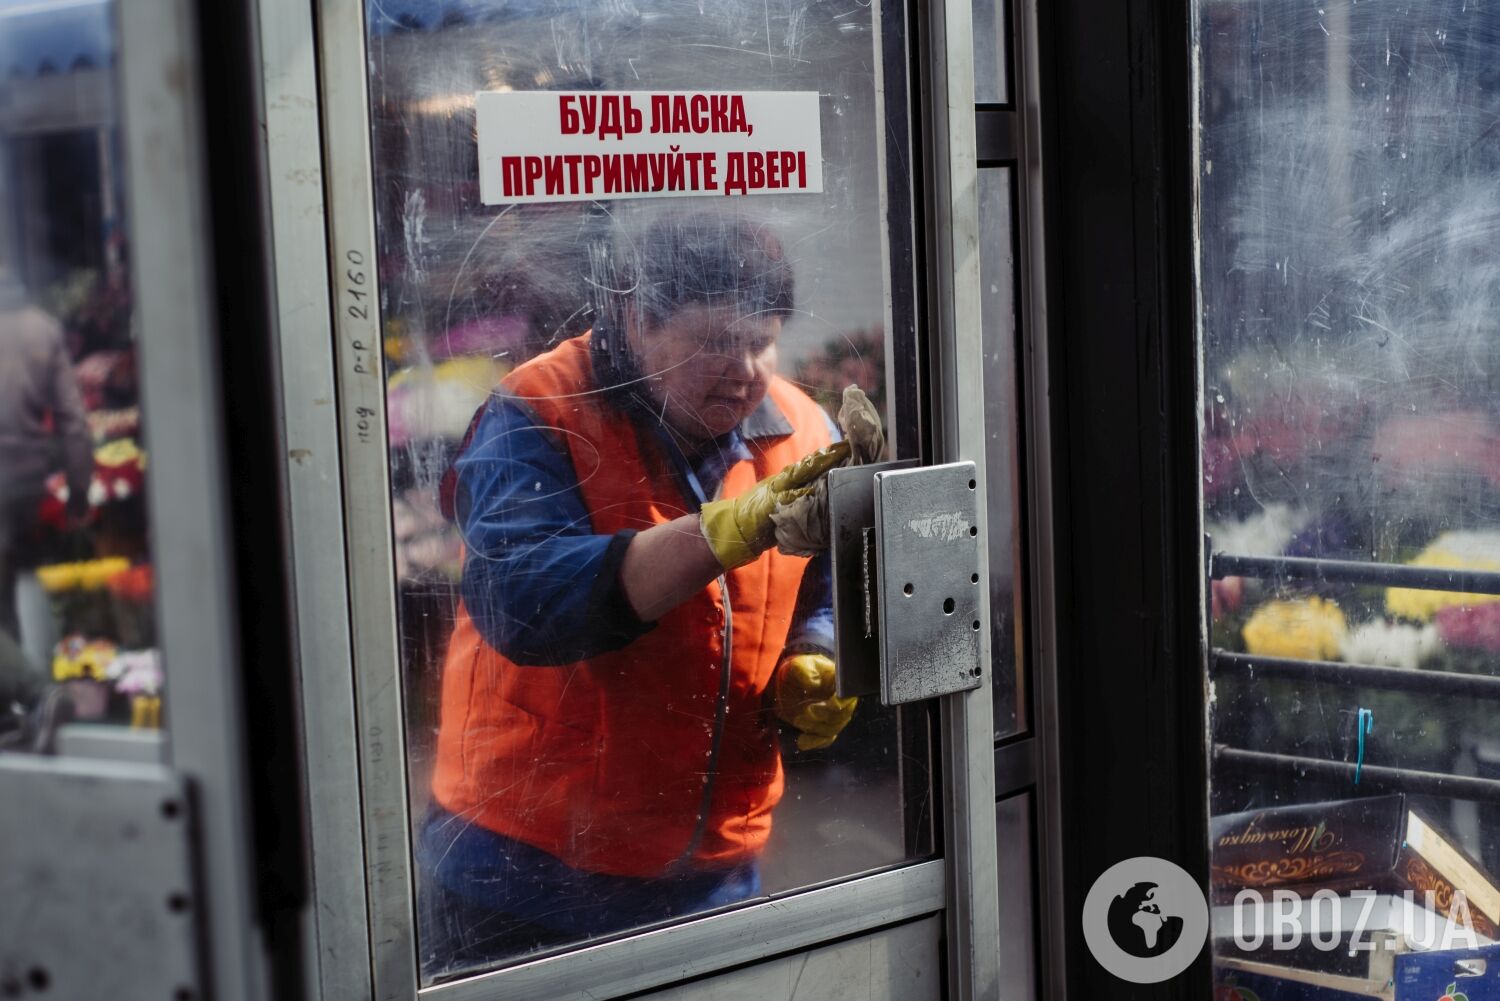 Ринки працюють, а салони краси пішли в підпілля. Як у Києві пройшов перший день карантину через коронавірус